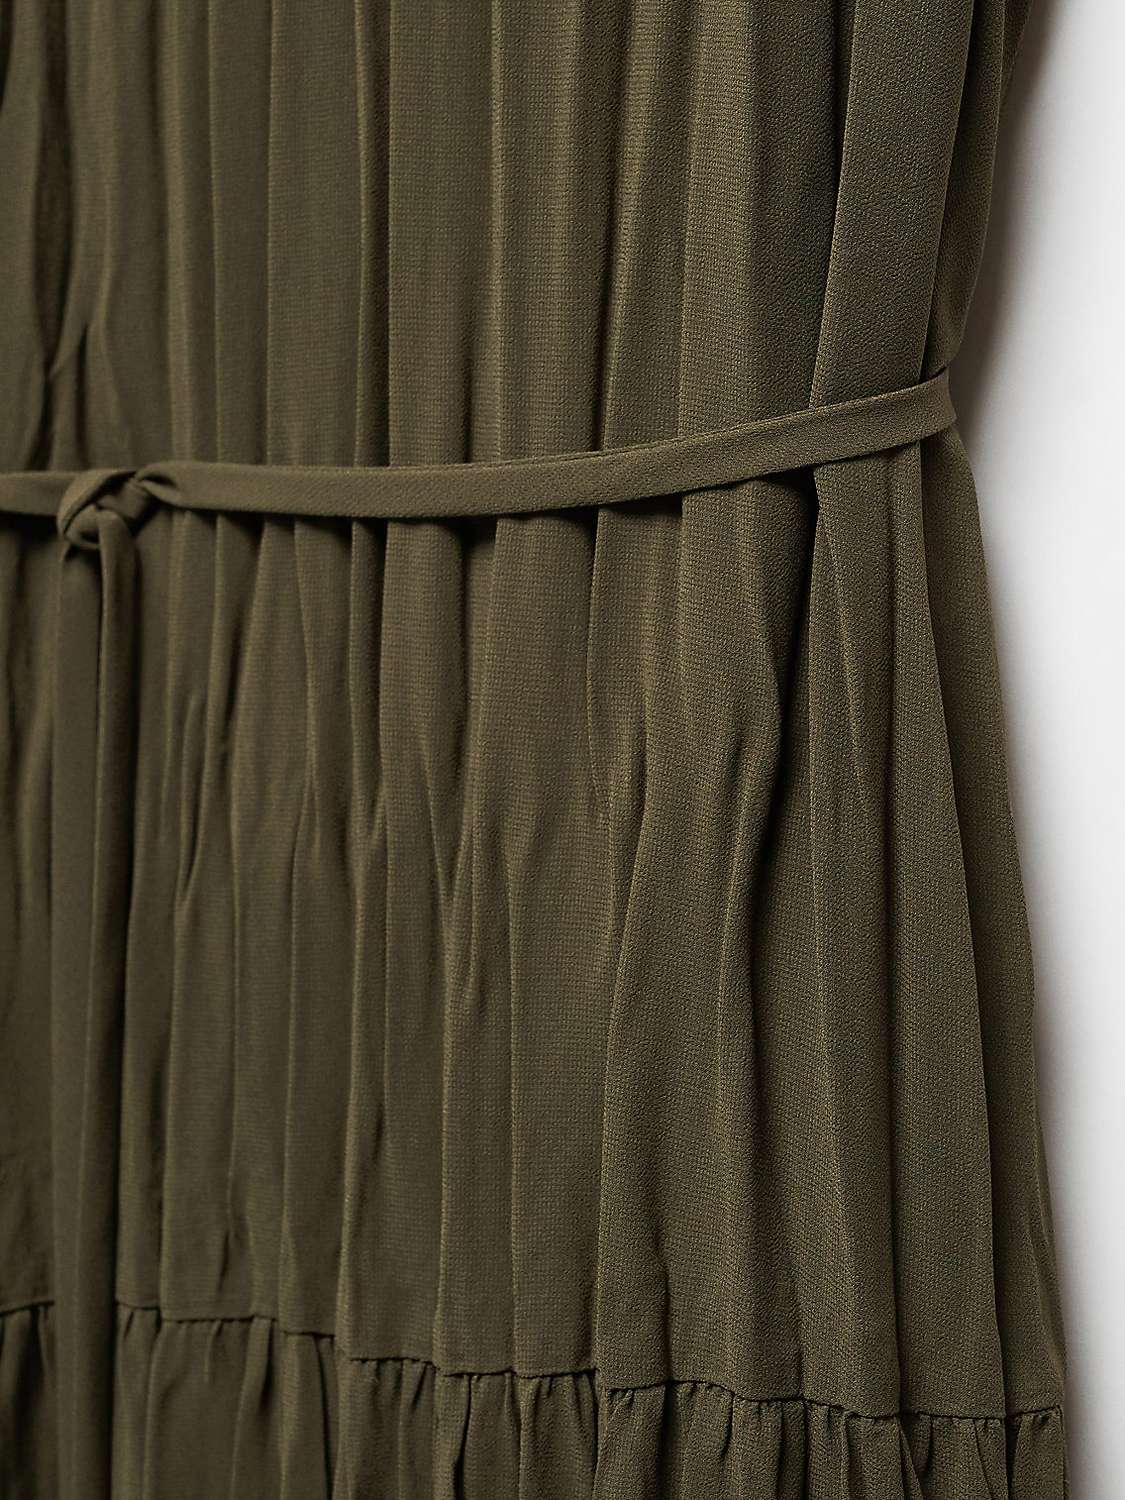 Buy Mango Isabel Pleated Mini Dress, Khaki Online at johnlewis.com